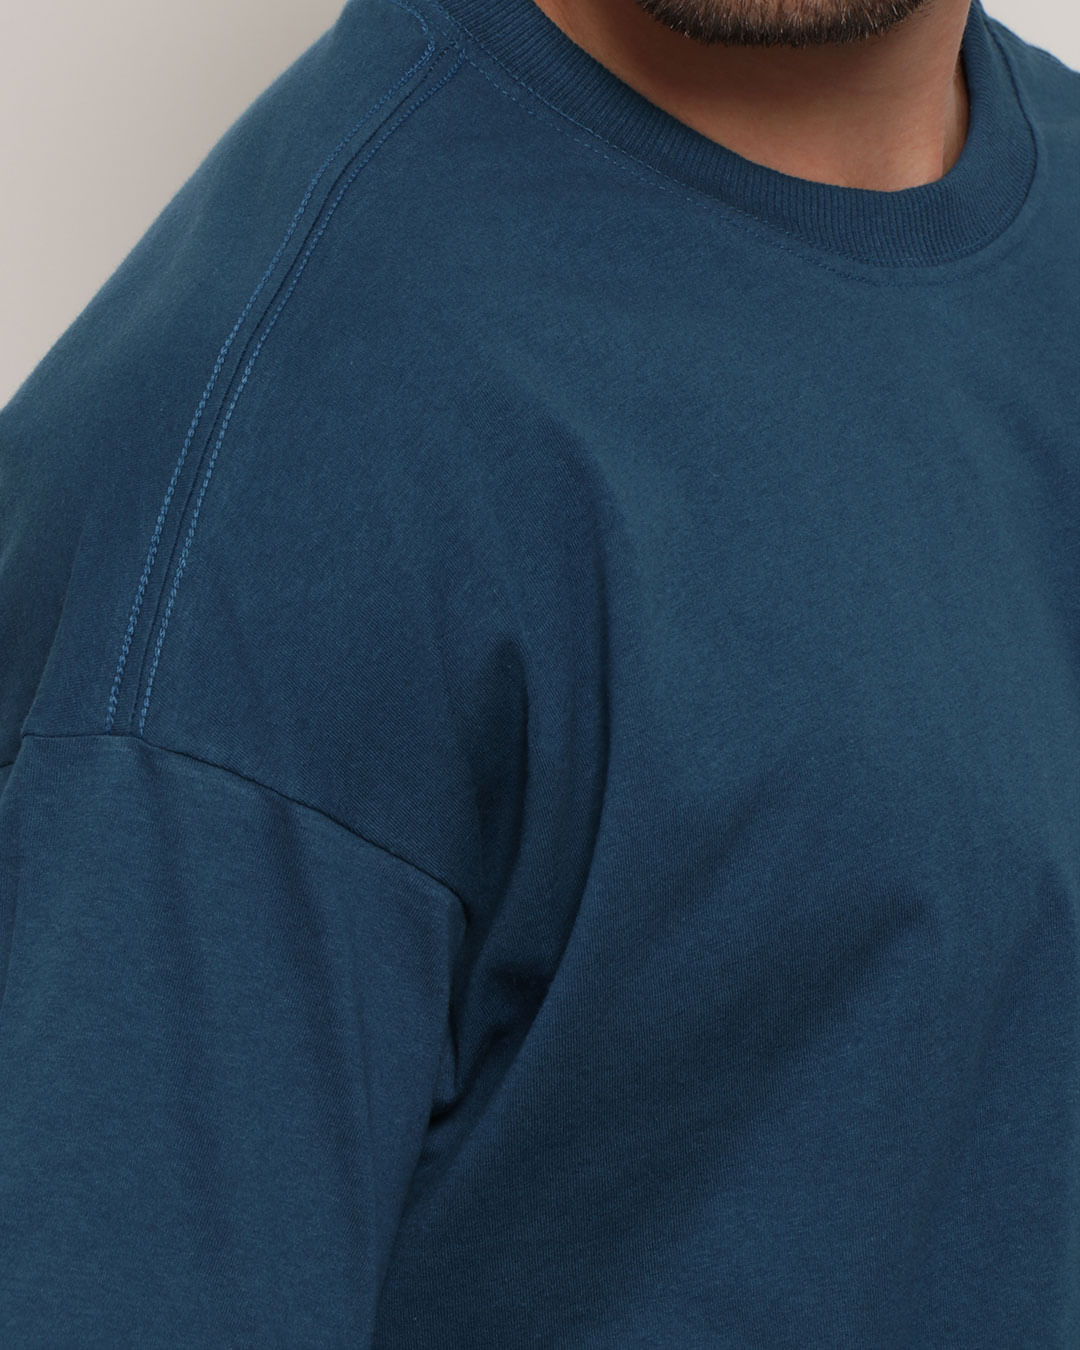 Camiseta-Over-Ubarn-15125730-Petroleo-P---Azul-Escuro